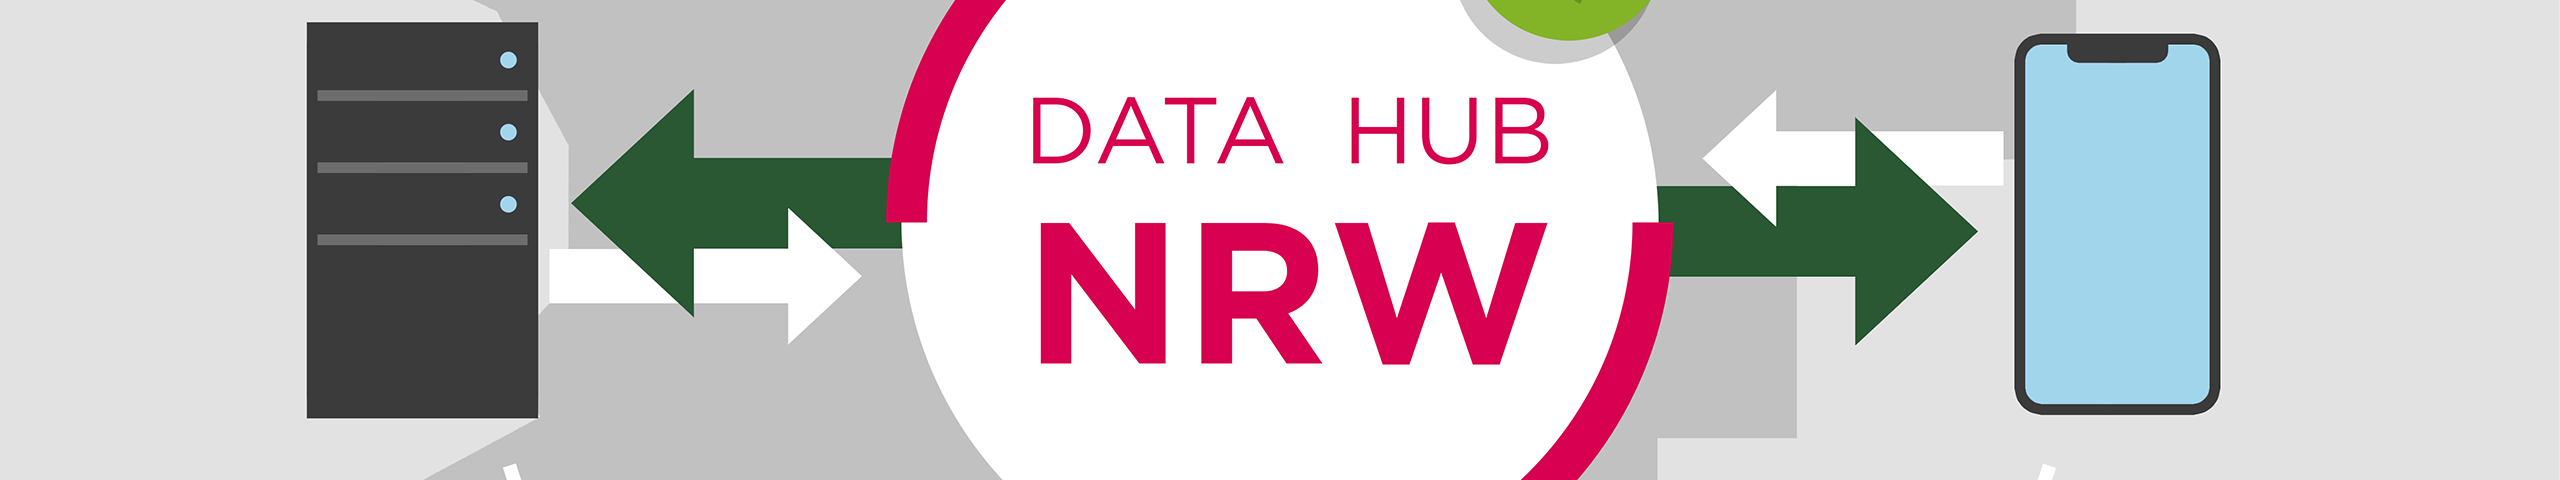 Data Hub NRW - Qualität © Tourismus NRW e.V.